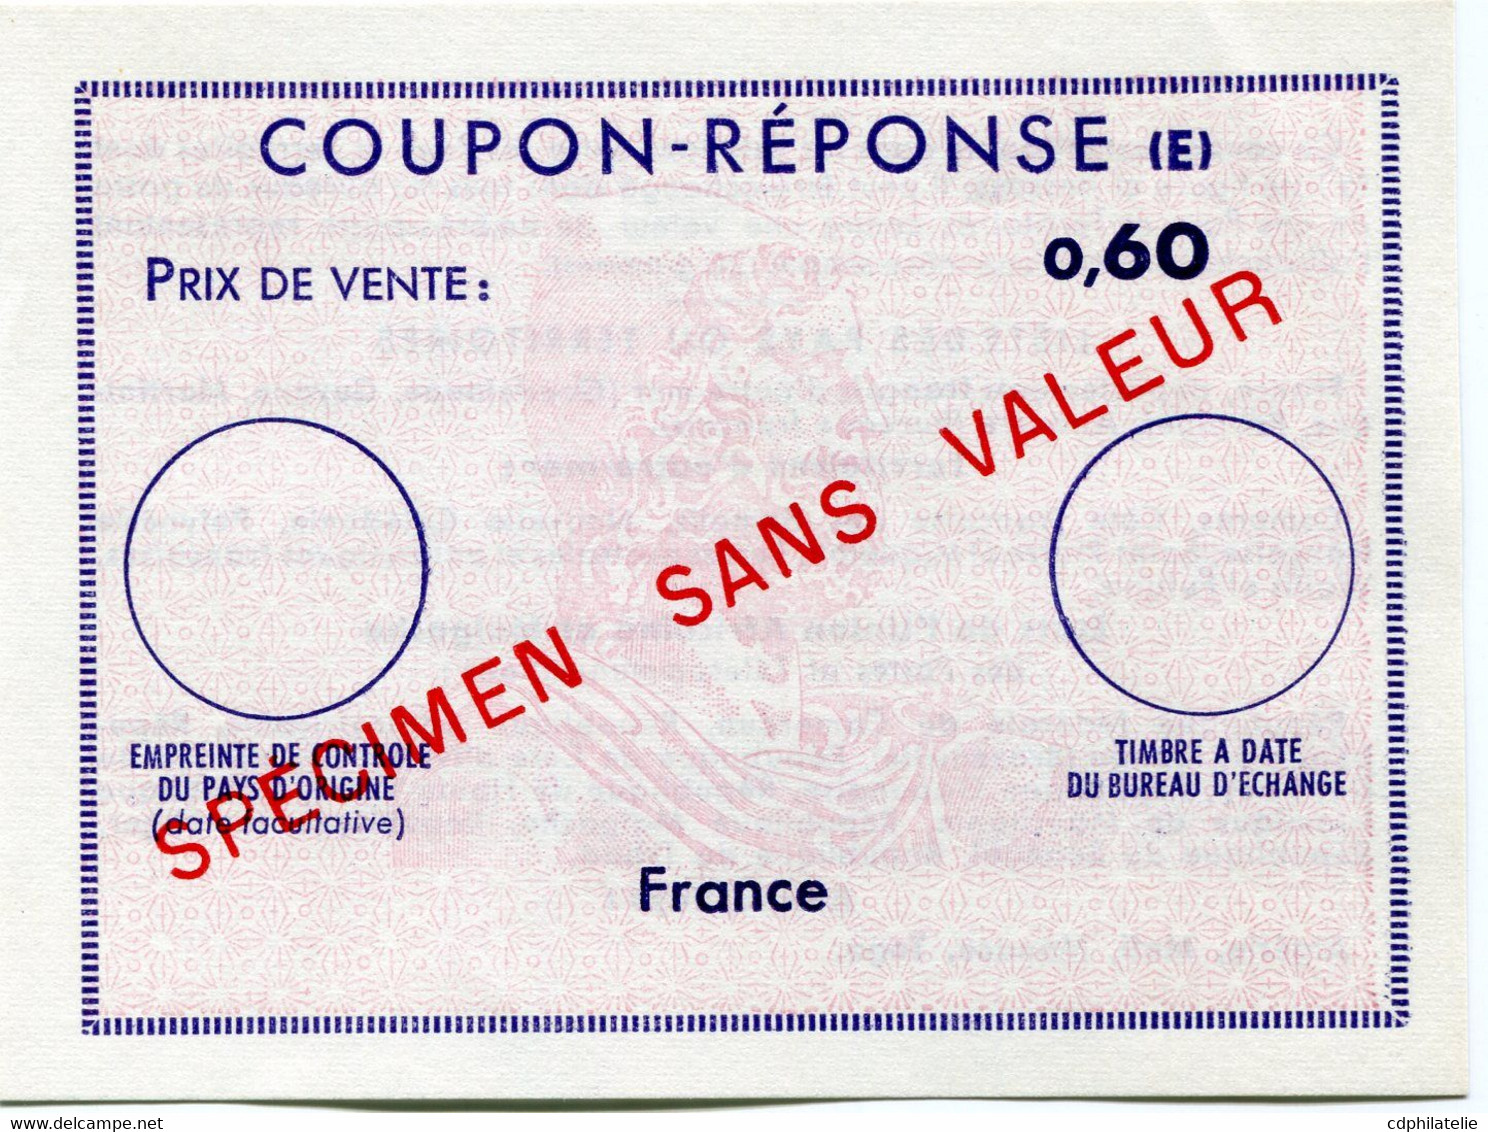 FRANCE COUPON - REPONSE (E)  0,60  SURCHARGE " SPECIMEN SANS VALEUR " - Coupons-réponse